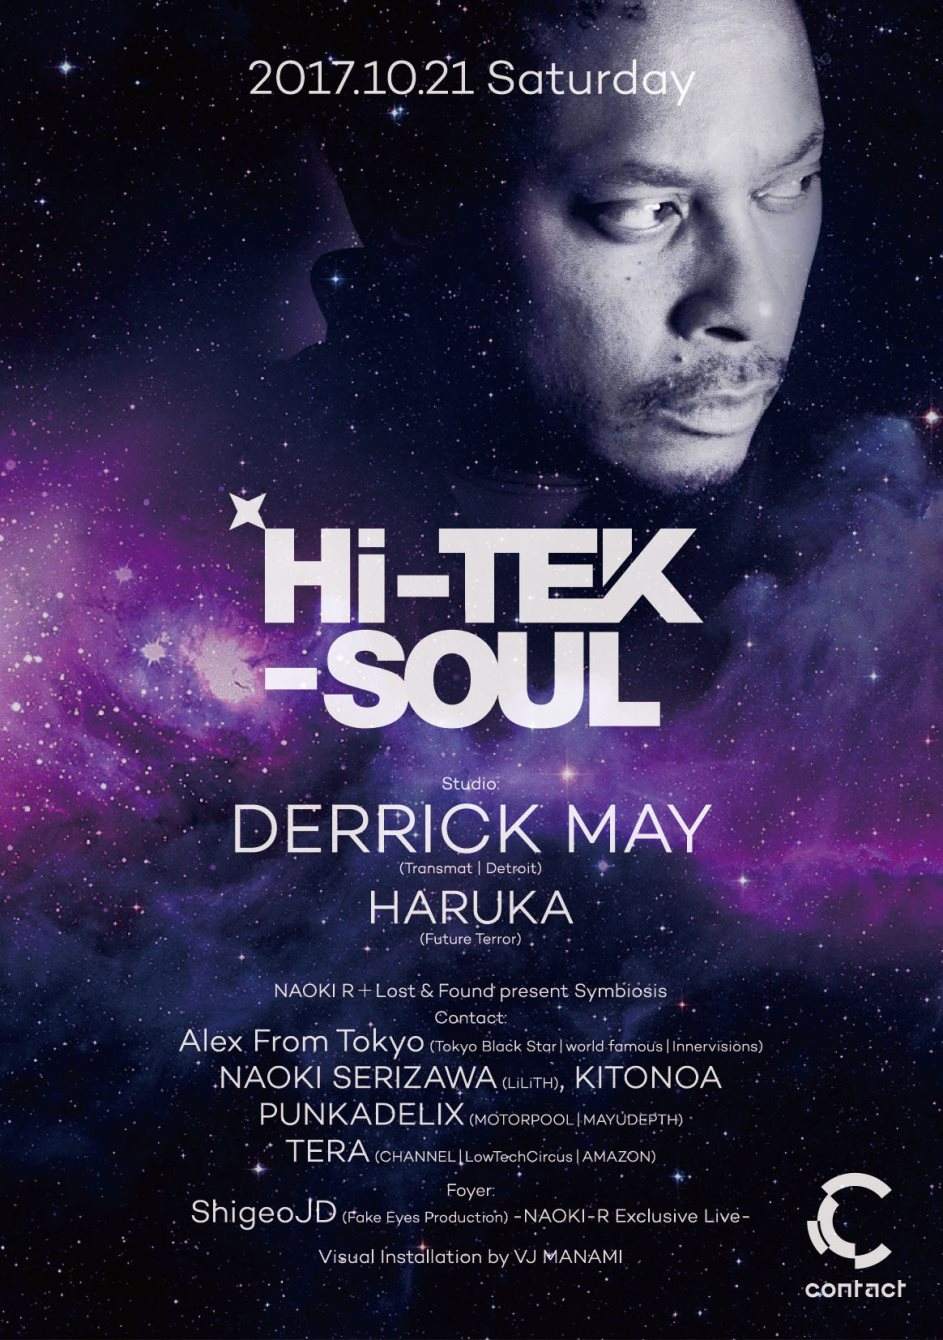 Derrick May Hi-TEK-Soul Japan Tour - フライヤー表